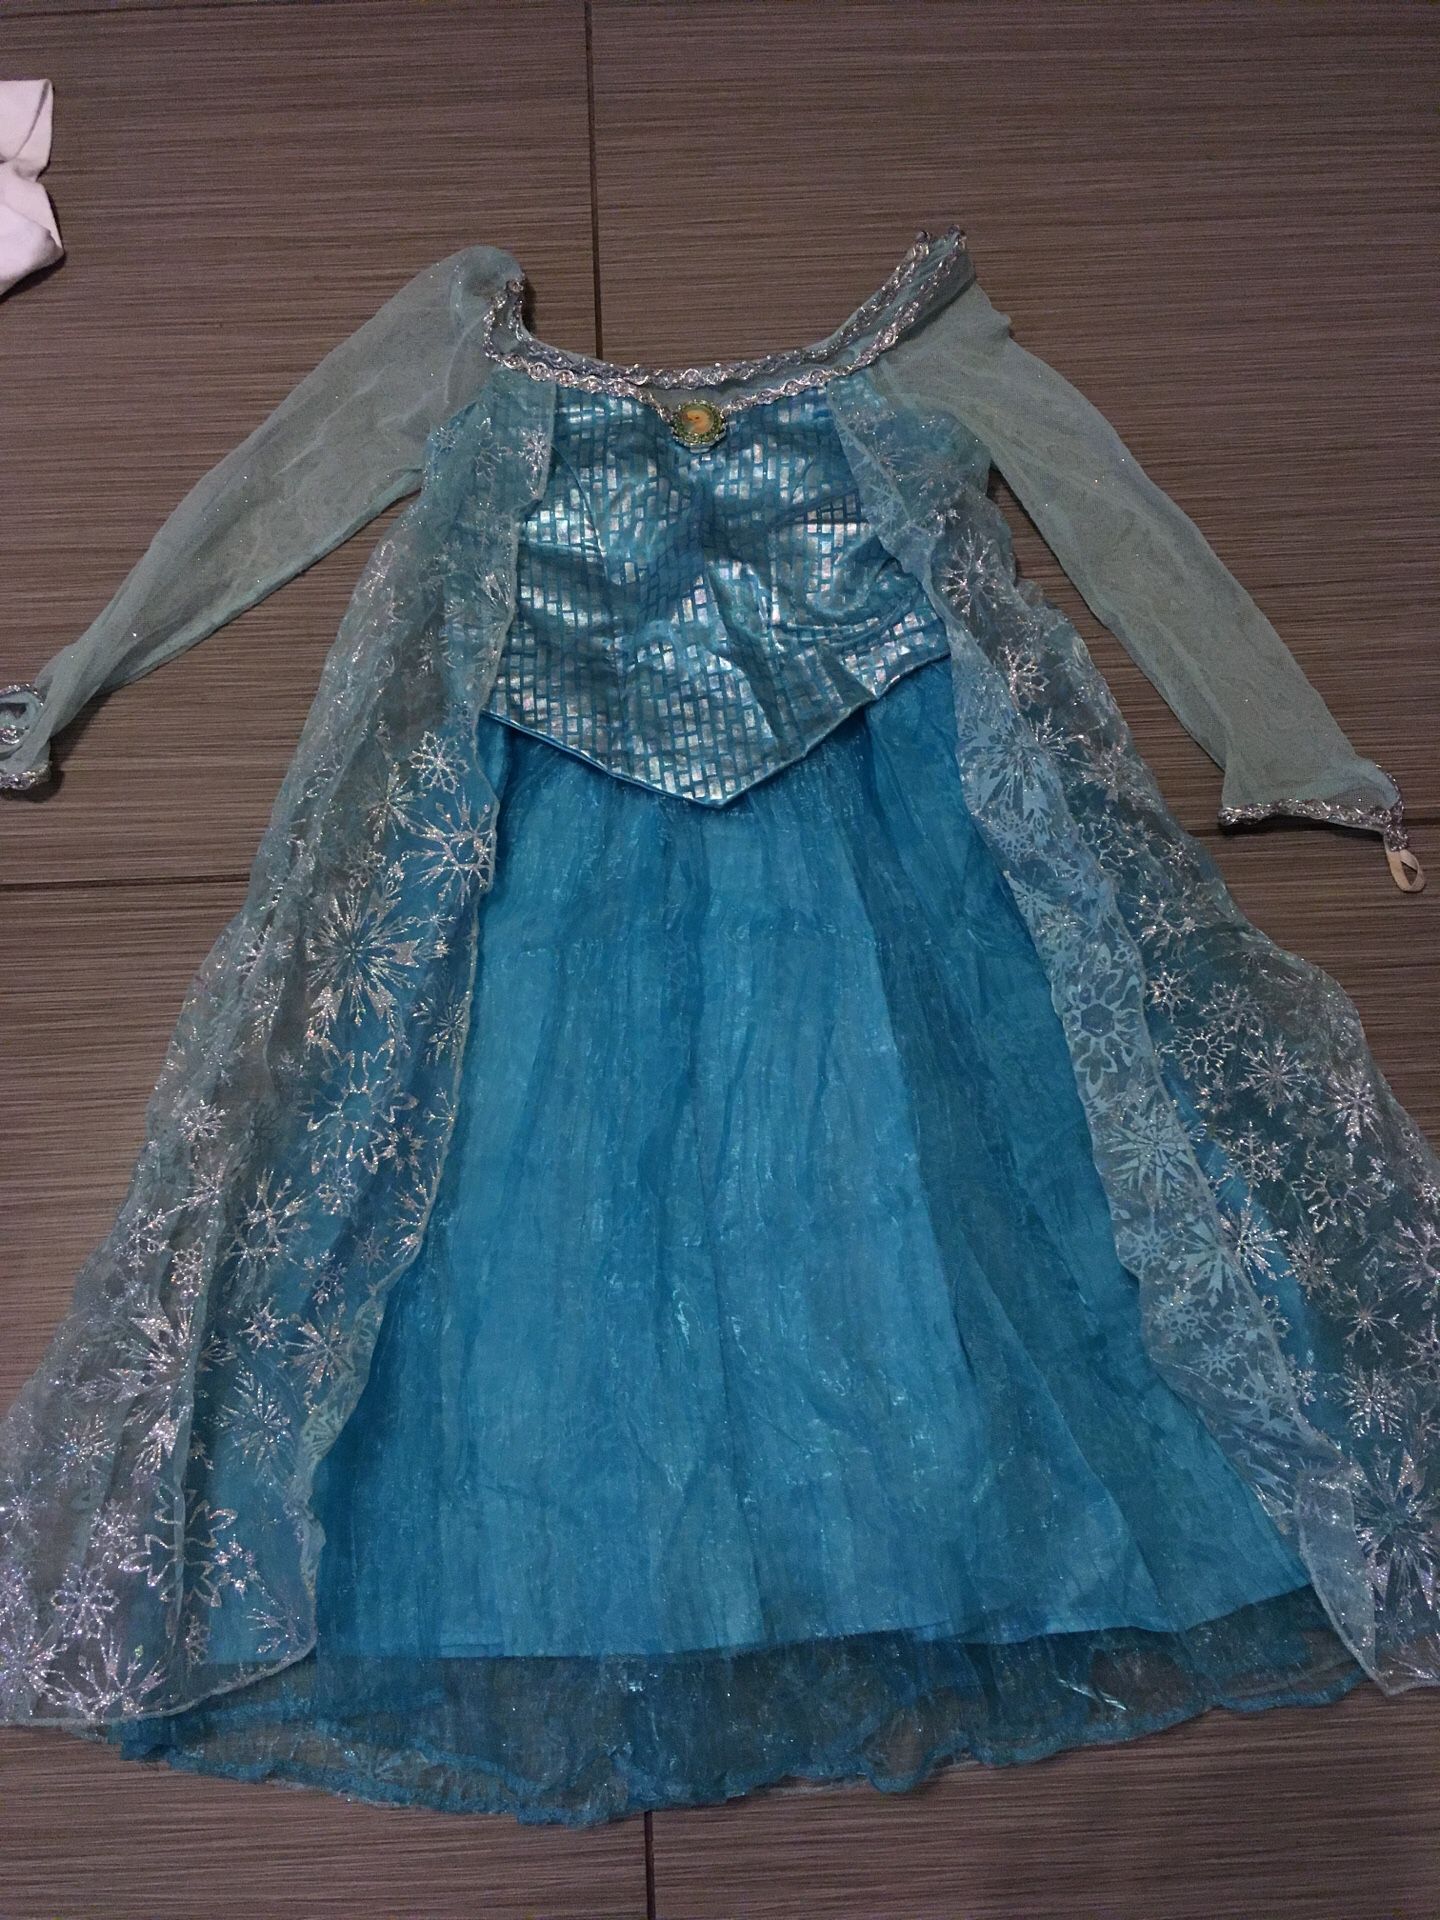 Authentic Disney’s Frozen Elsa Princess Dress